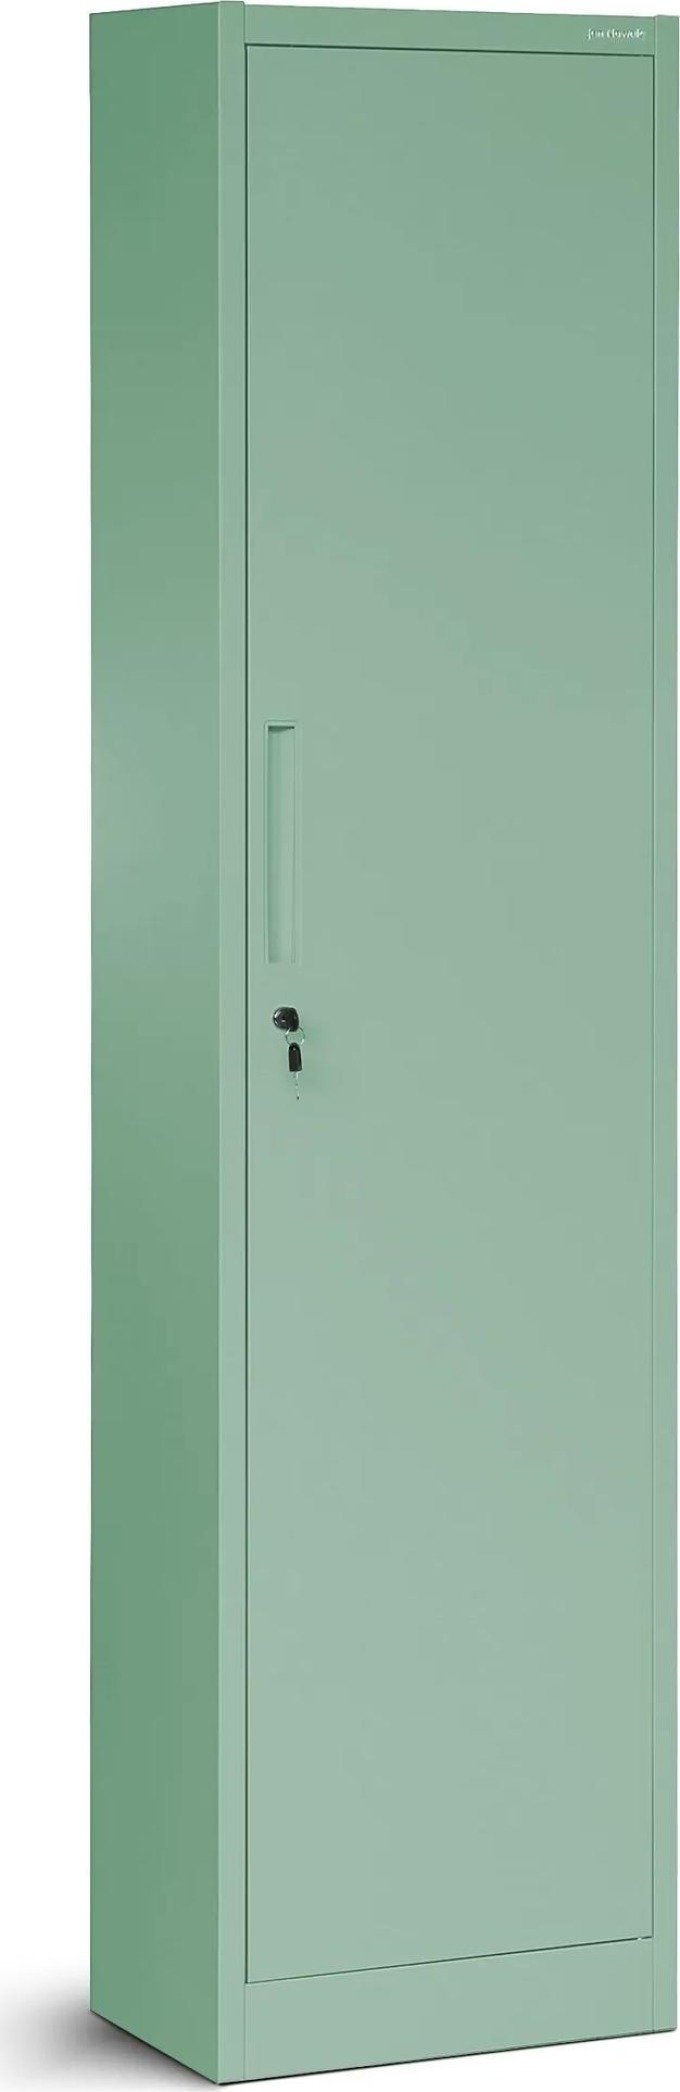 JAN NOWAK Vysoká kancelářská skříň ALEX, 450 x 850 x 400 mm, Fresh Style: pastelově zelená